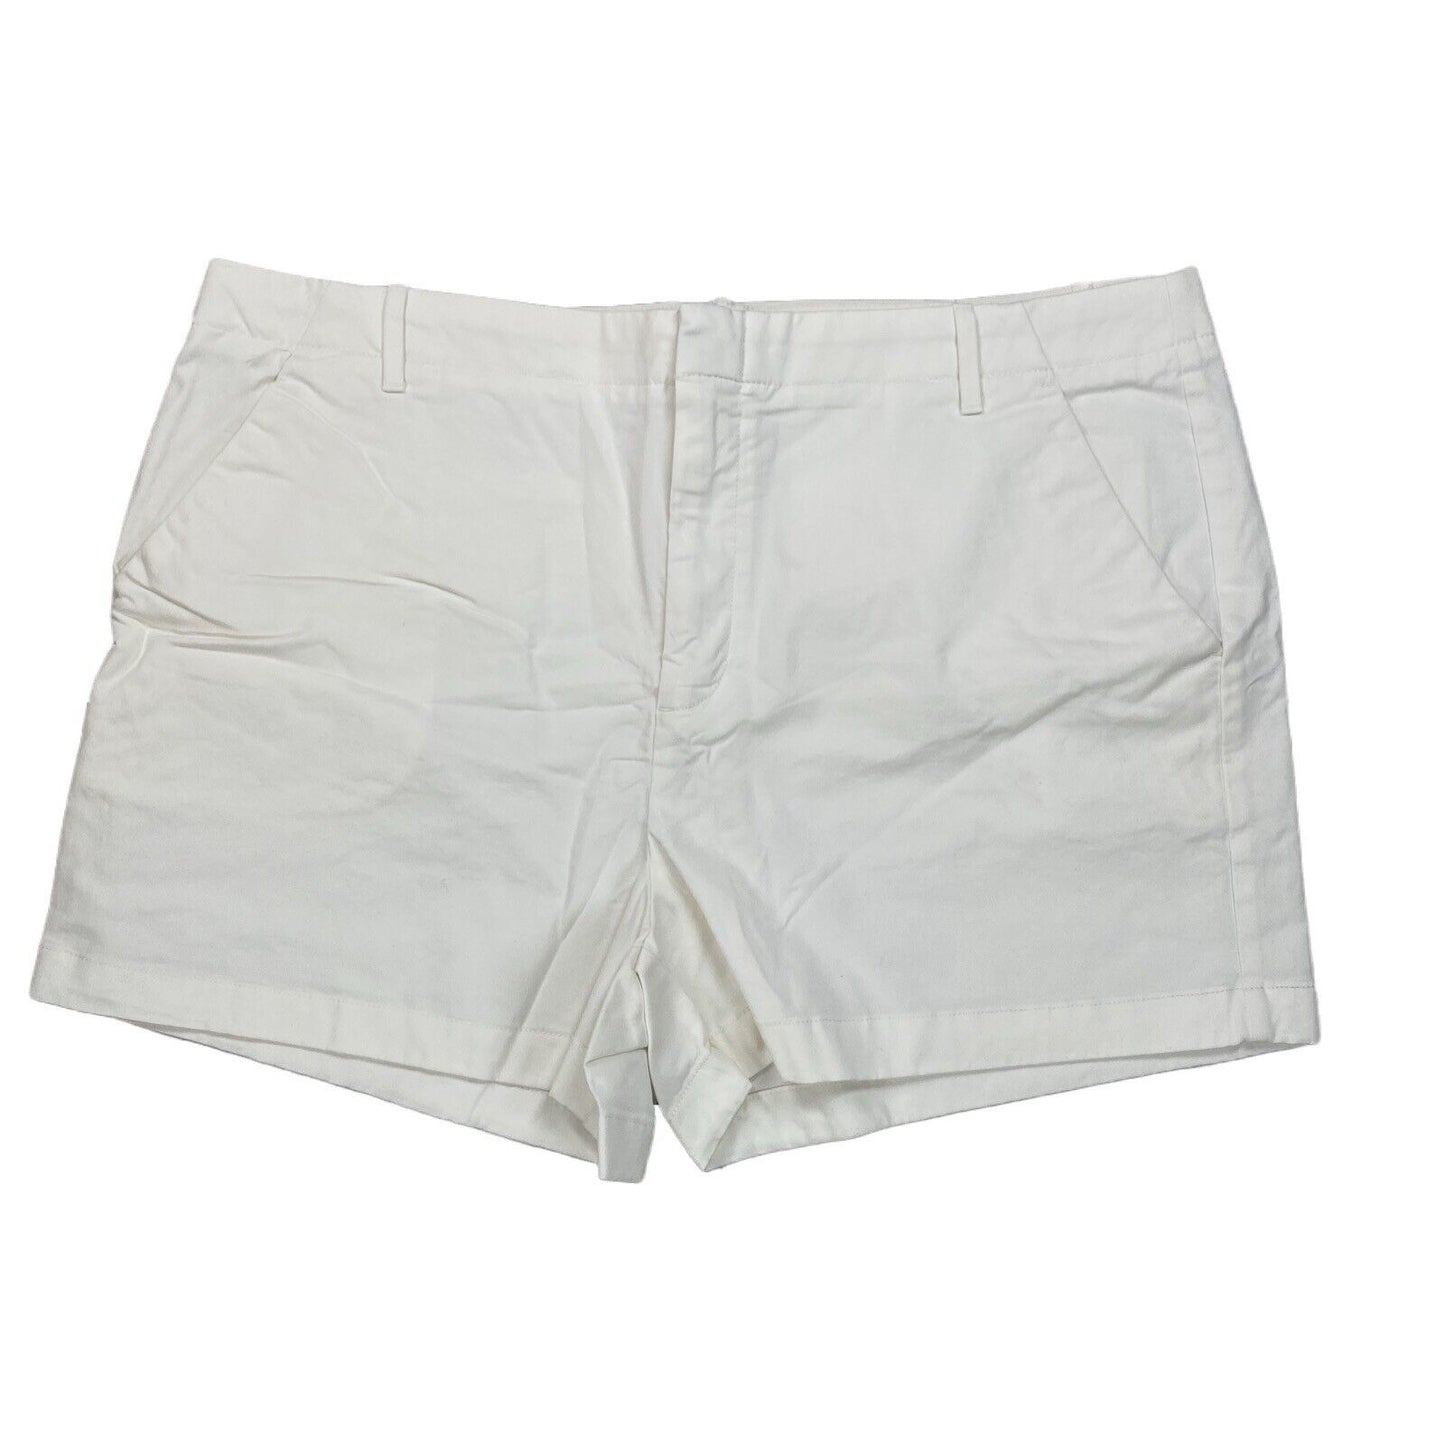 NEW Banana Republic Women's Ivory Authentic Chino Shorts - Petite 18